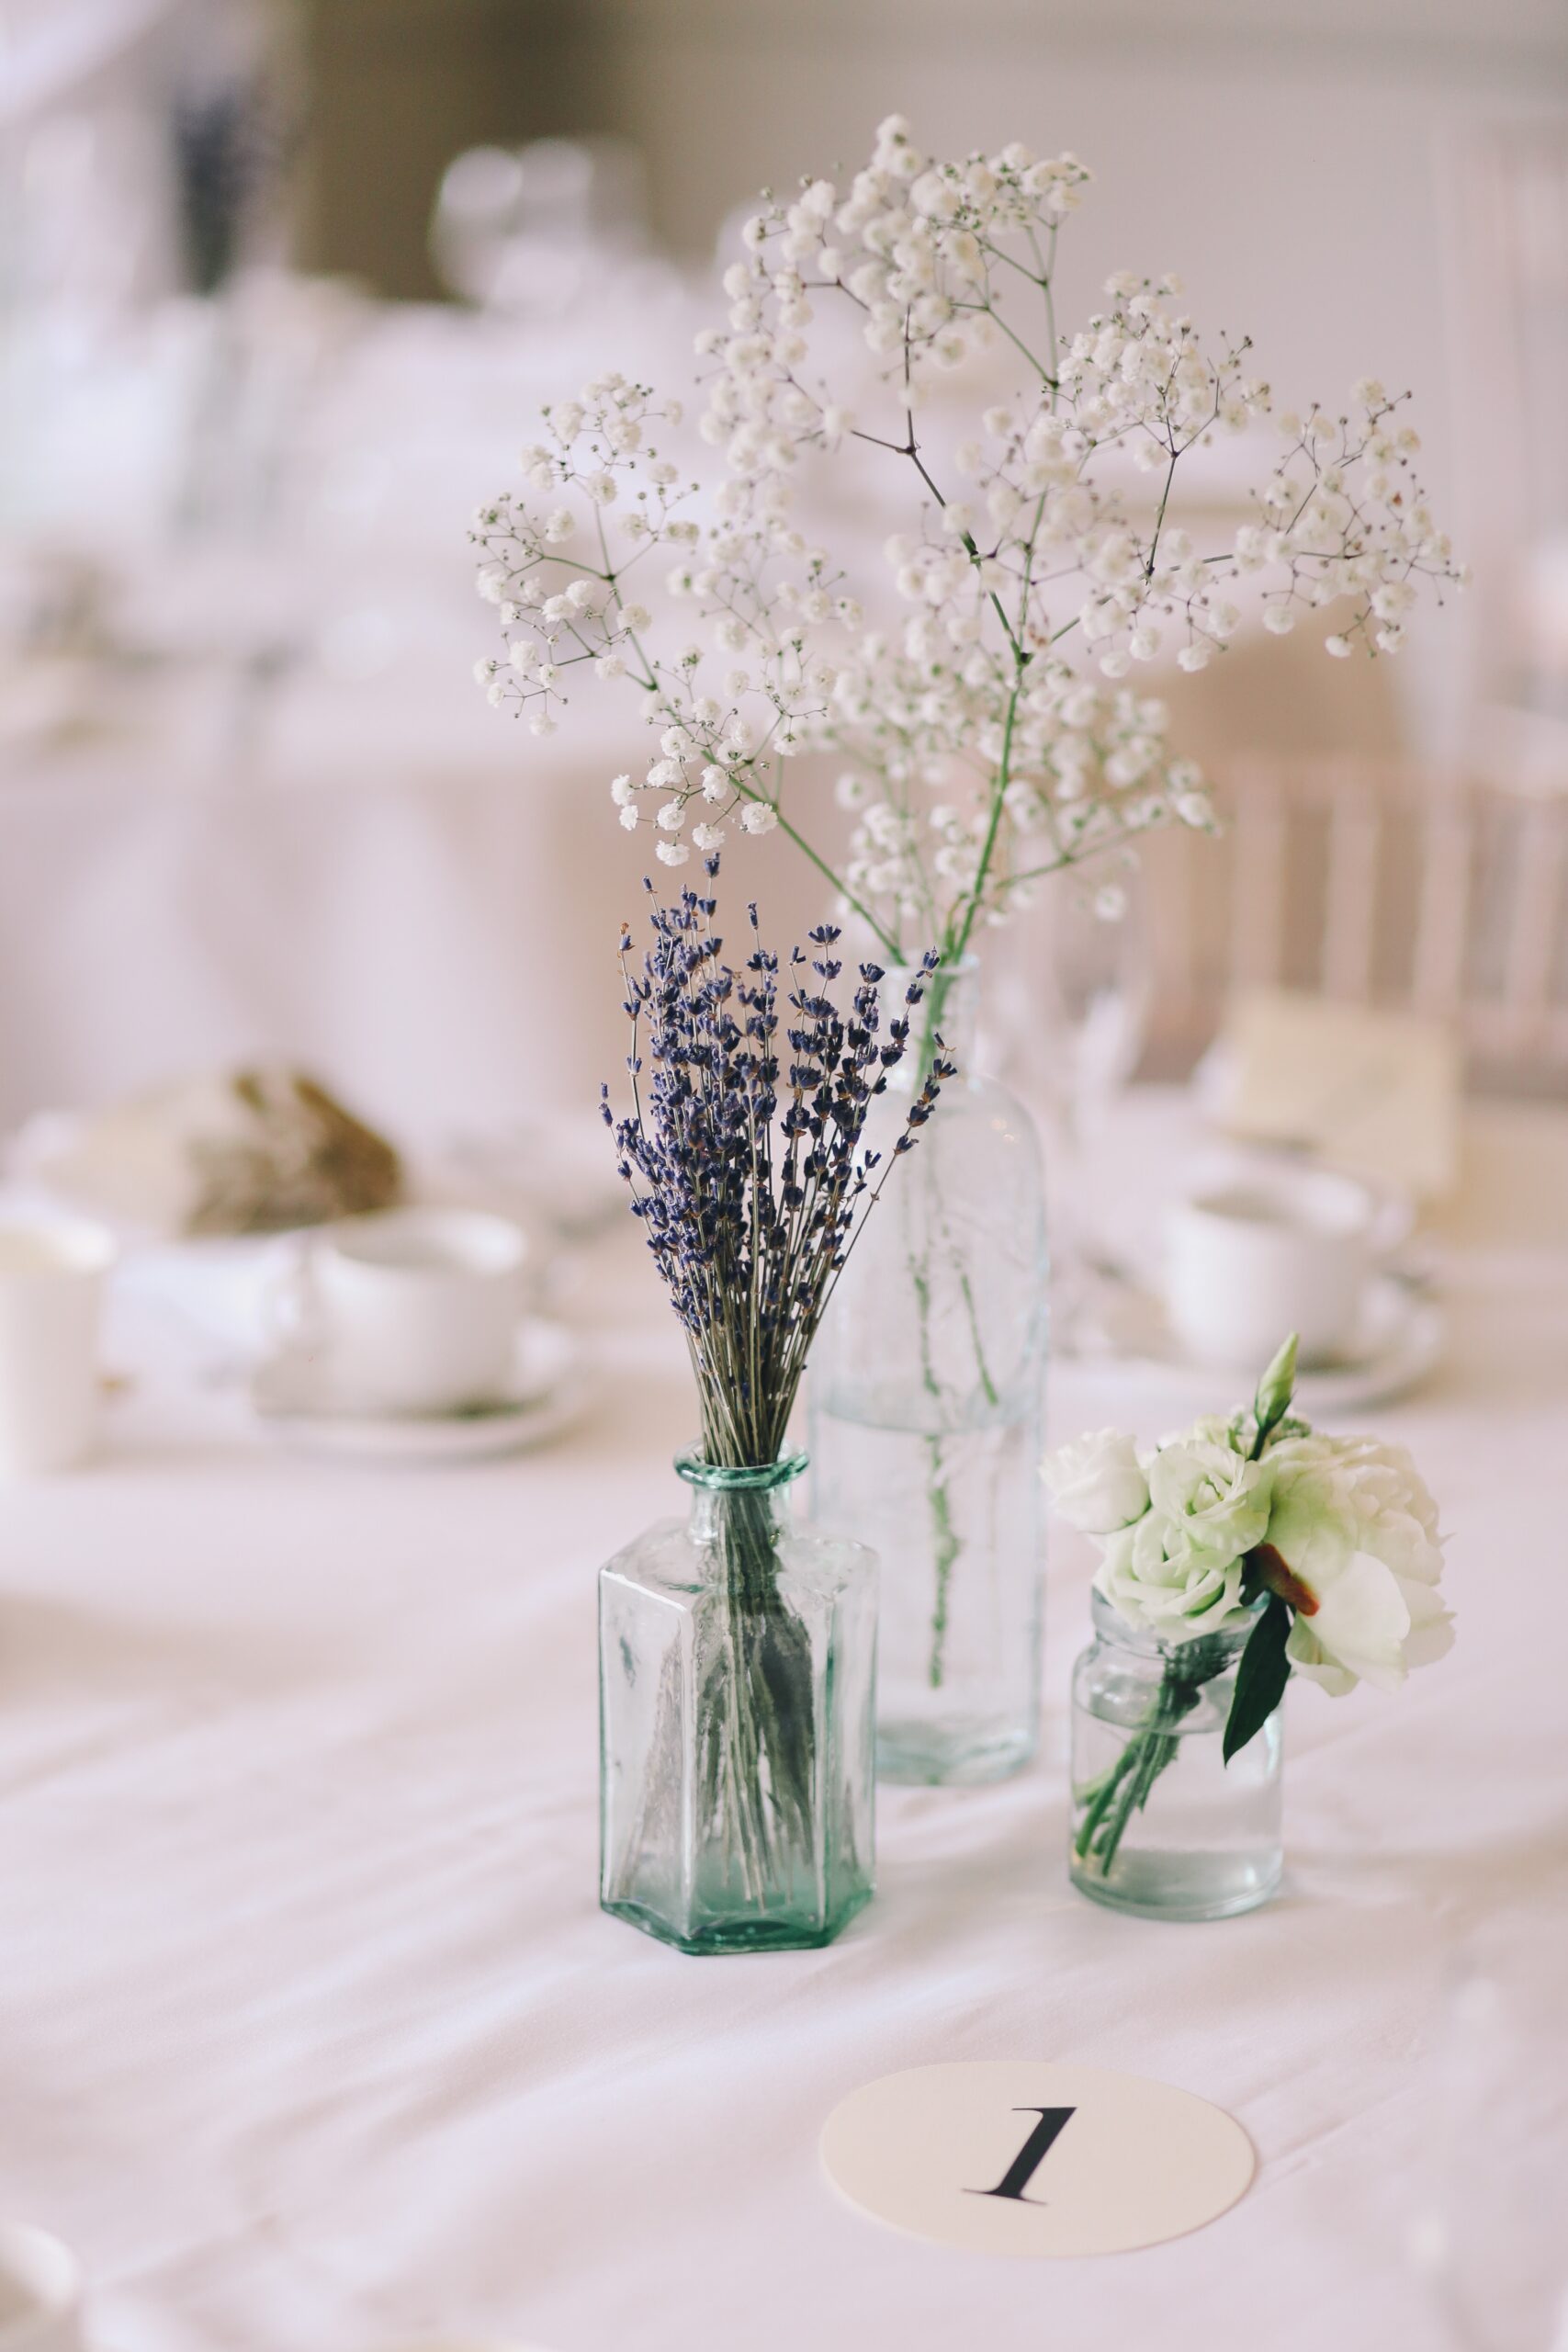 Centro tavola elegante con vaso bianco e fiori bianchi e lilla